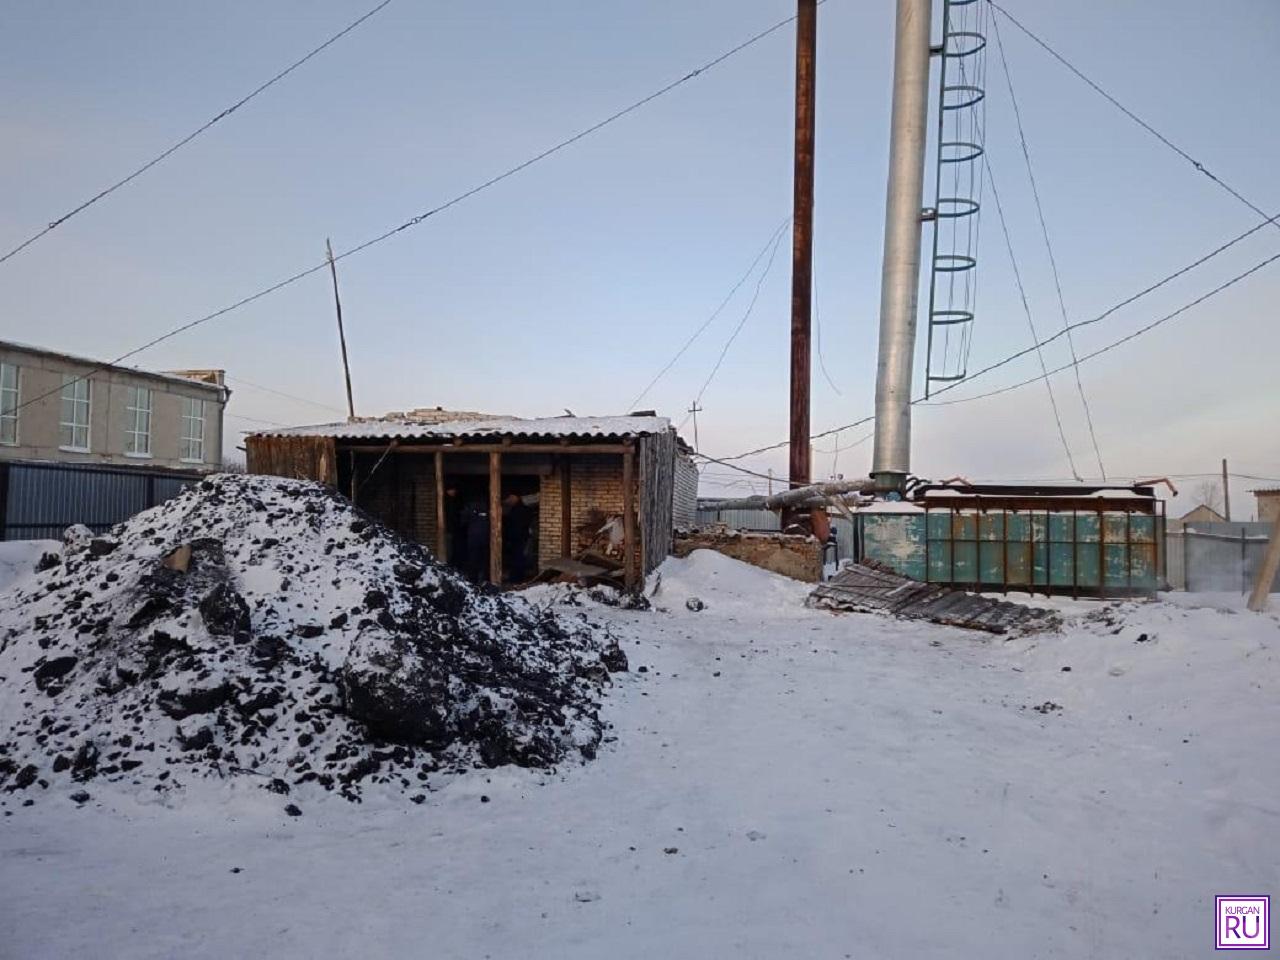 Фото с места происшествия предоставлено пресс-службой ГУ МЧС России по Курганской области